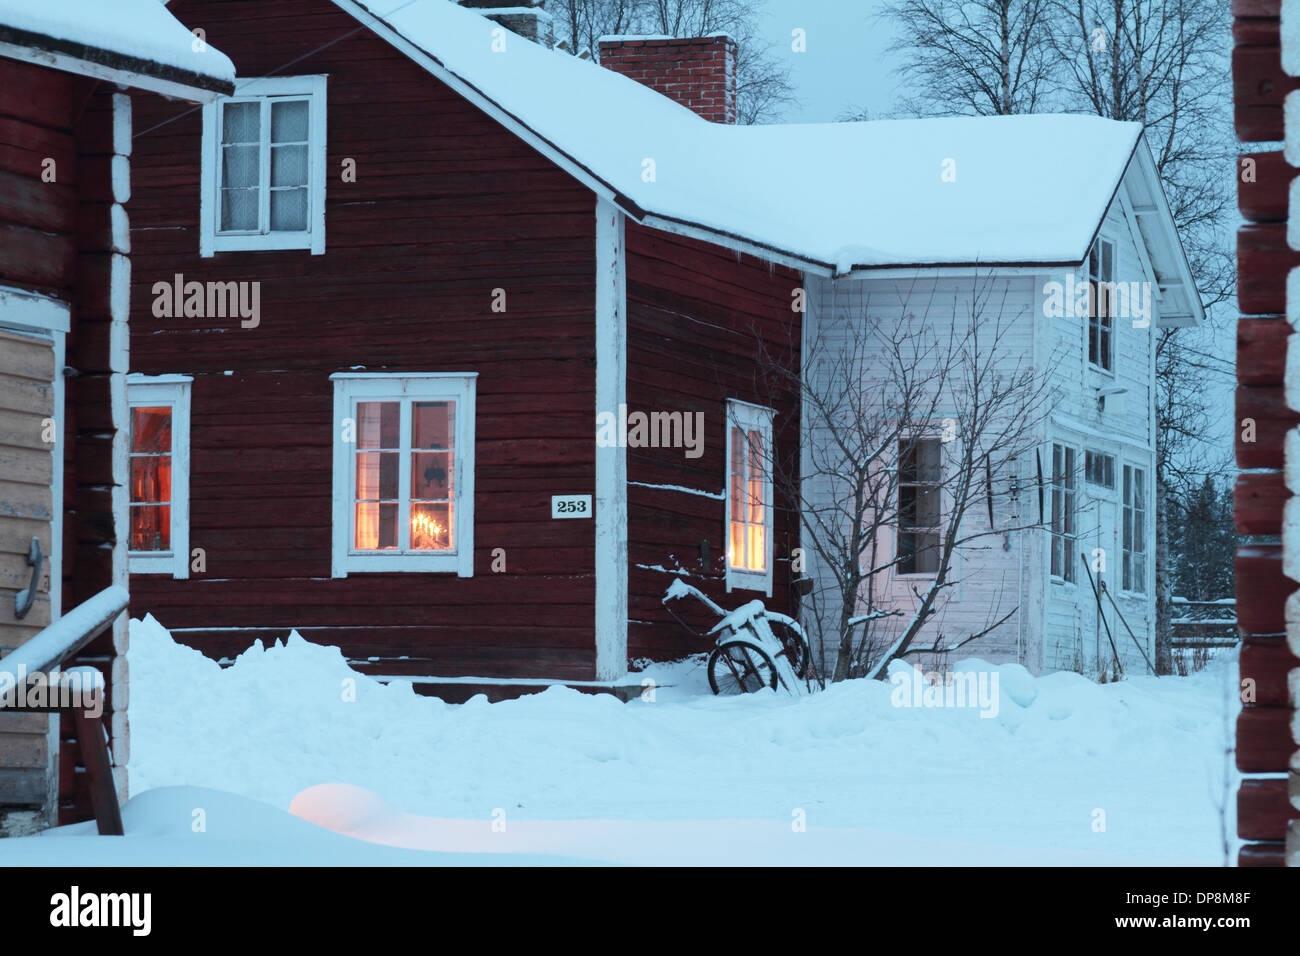 Maison en bois rouge avec sentiment de Noël dans les pays nordiques l'hiver avec de la neige Banque D'Images